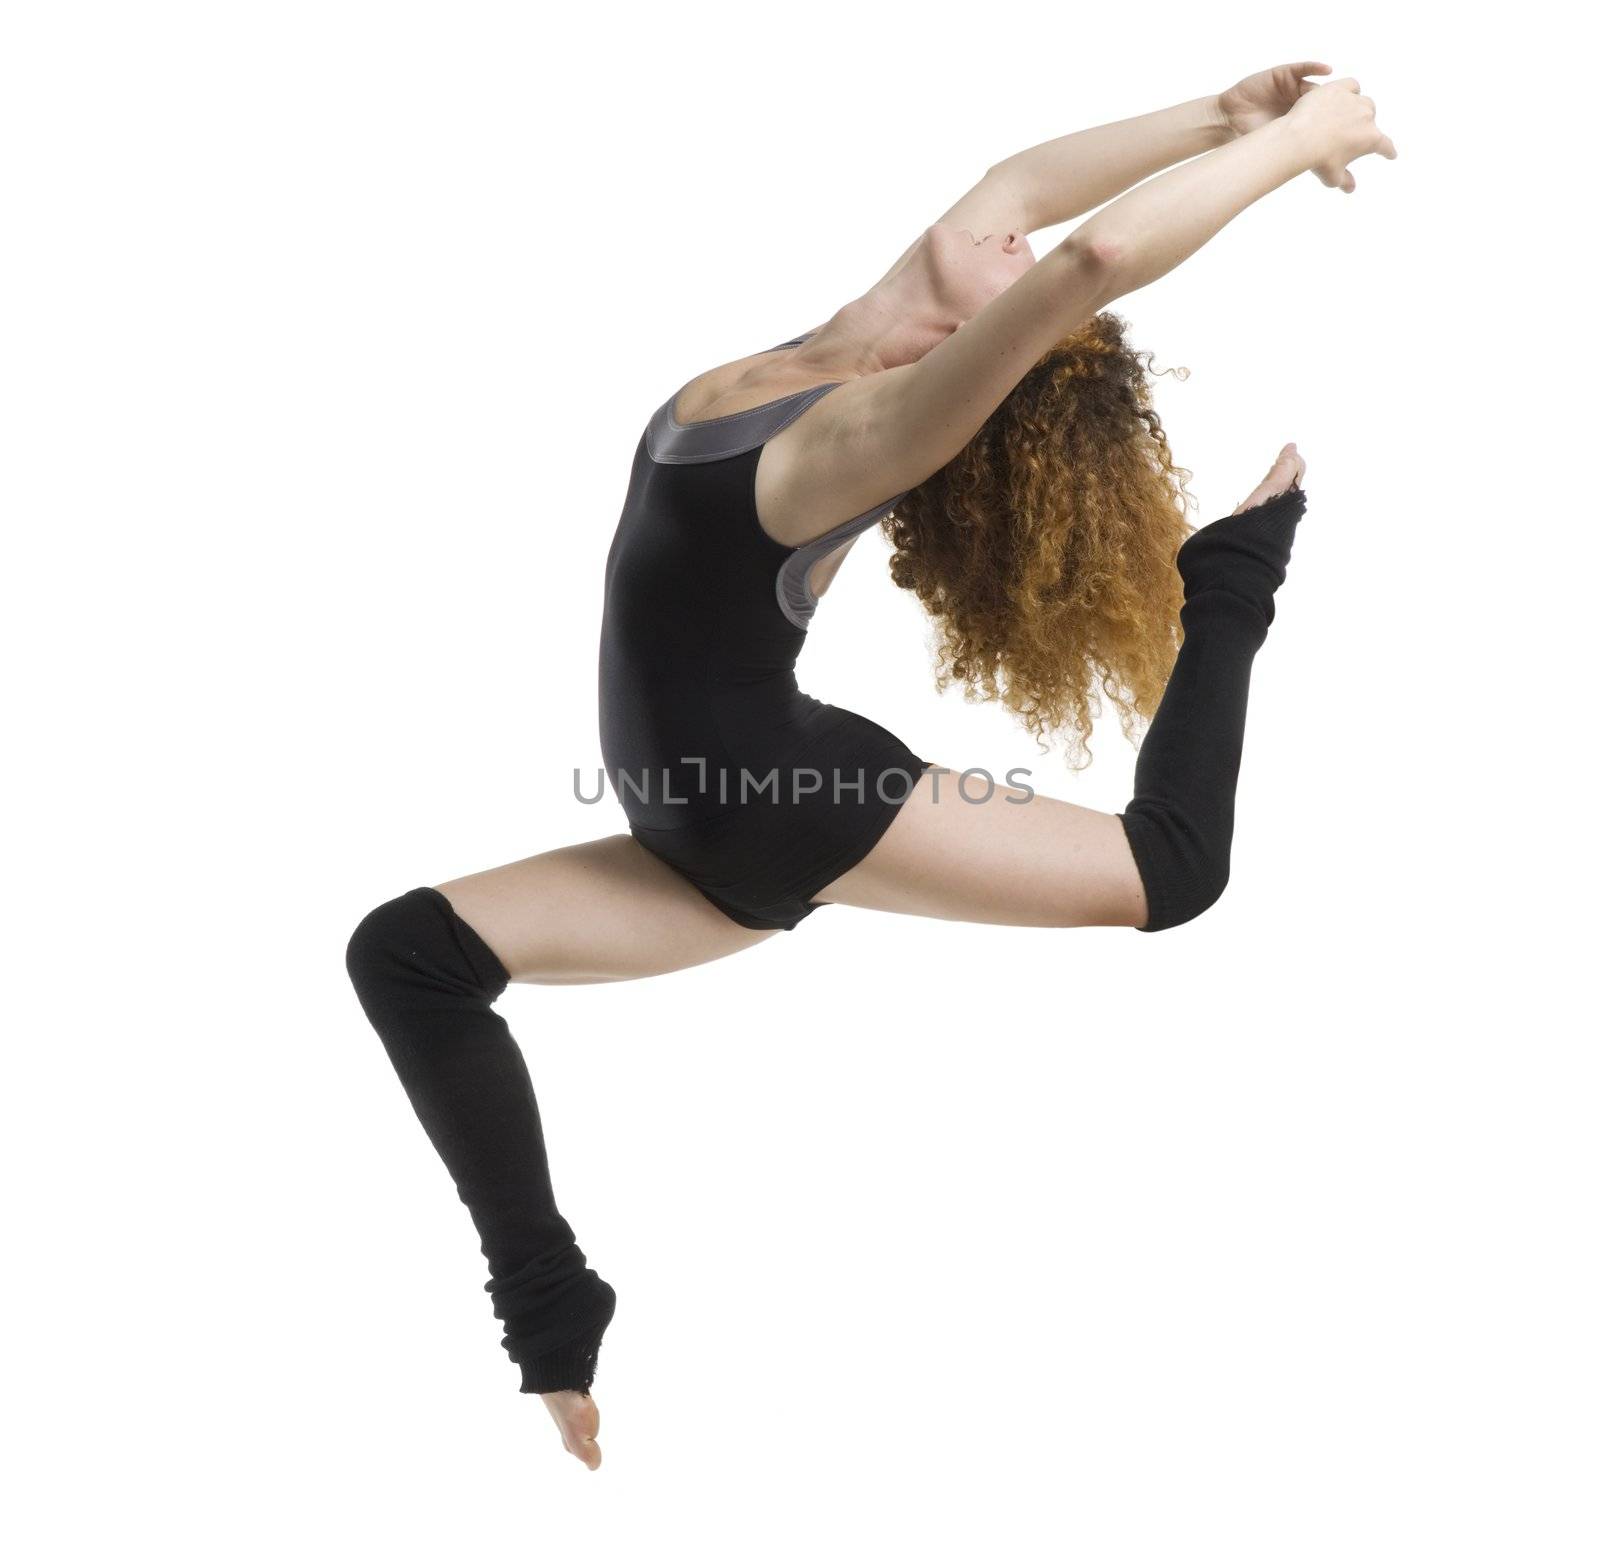 a modern dancer with black dress jumping